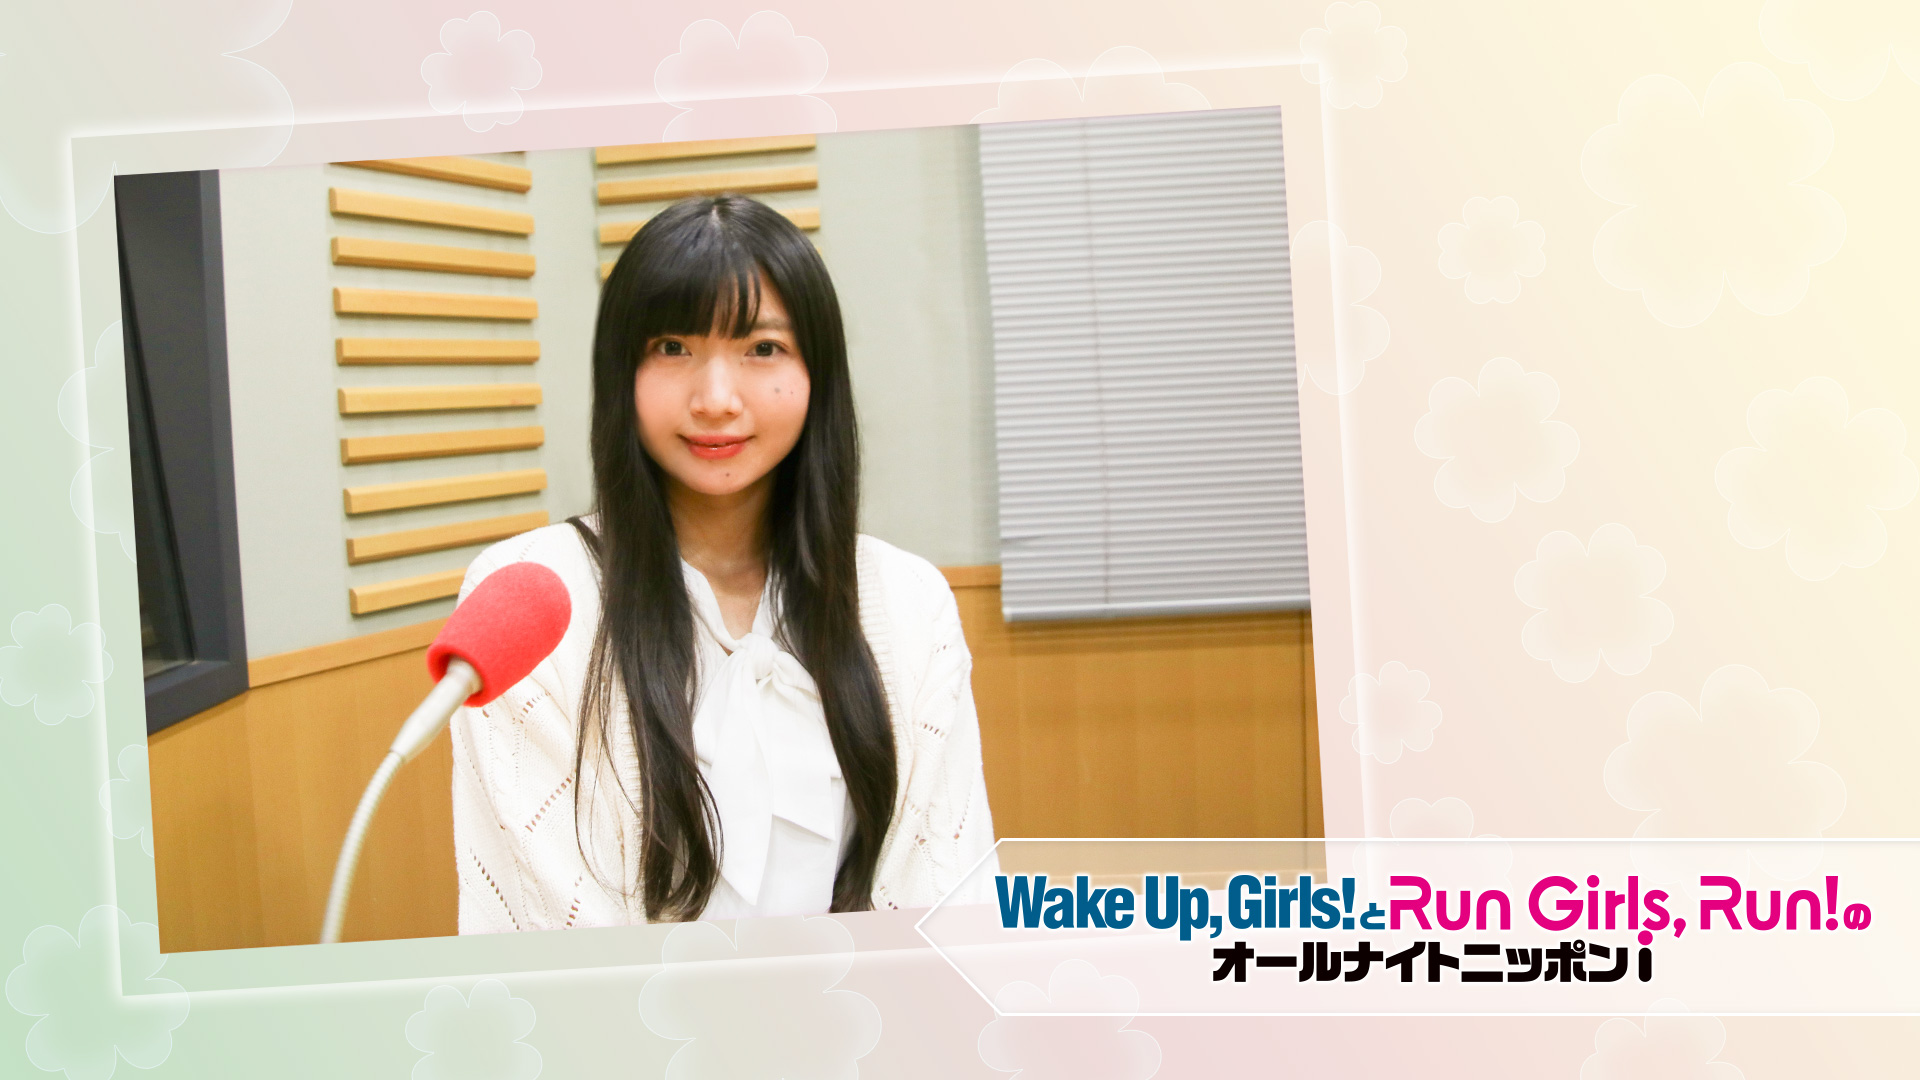 解散発表のwake Up Girls 永野愛理 一緒にこれからも走り抜けてください ニッポン放送 News Online